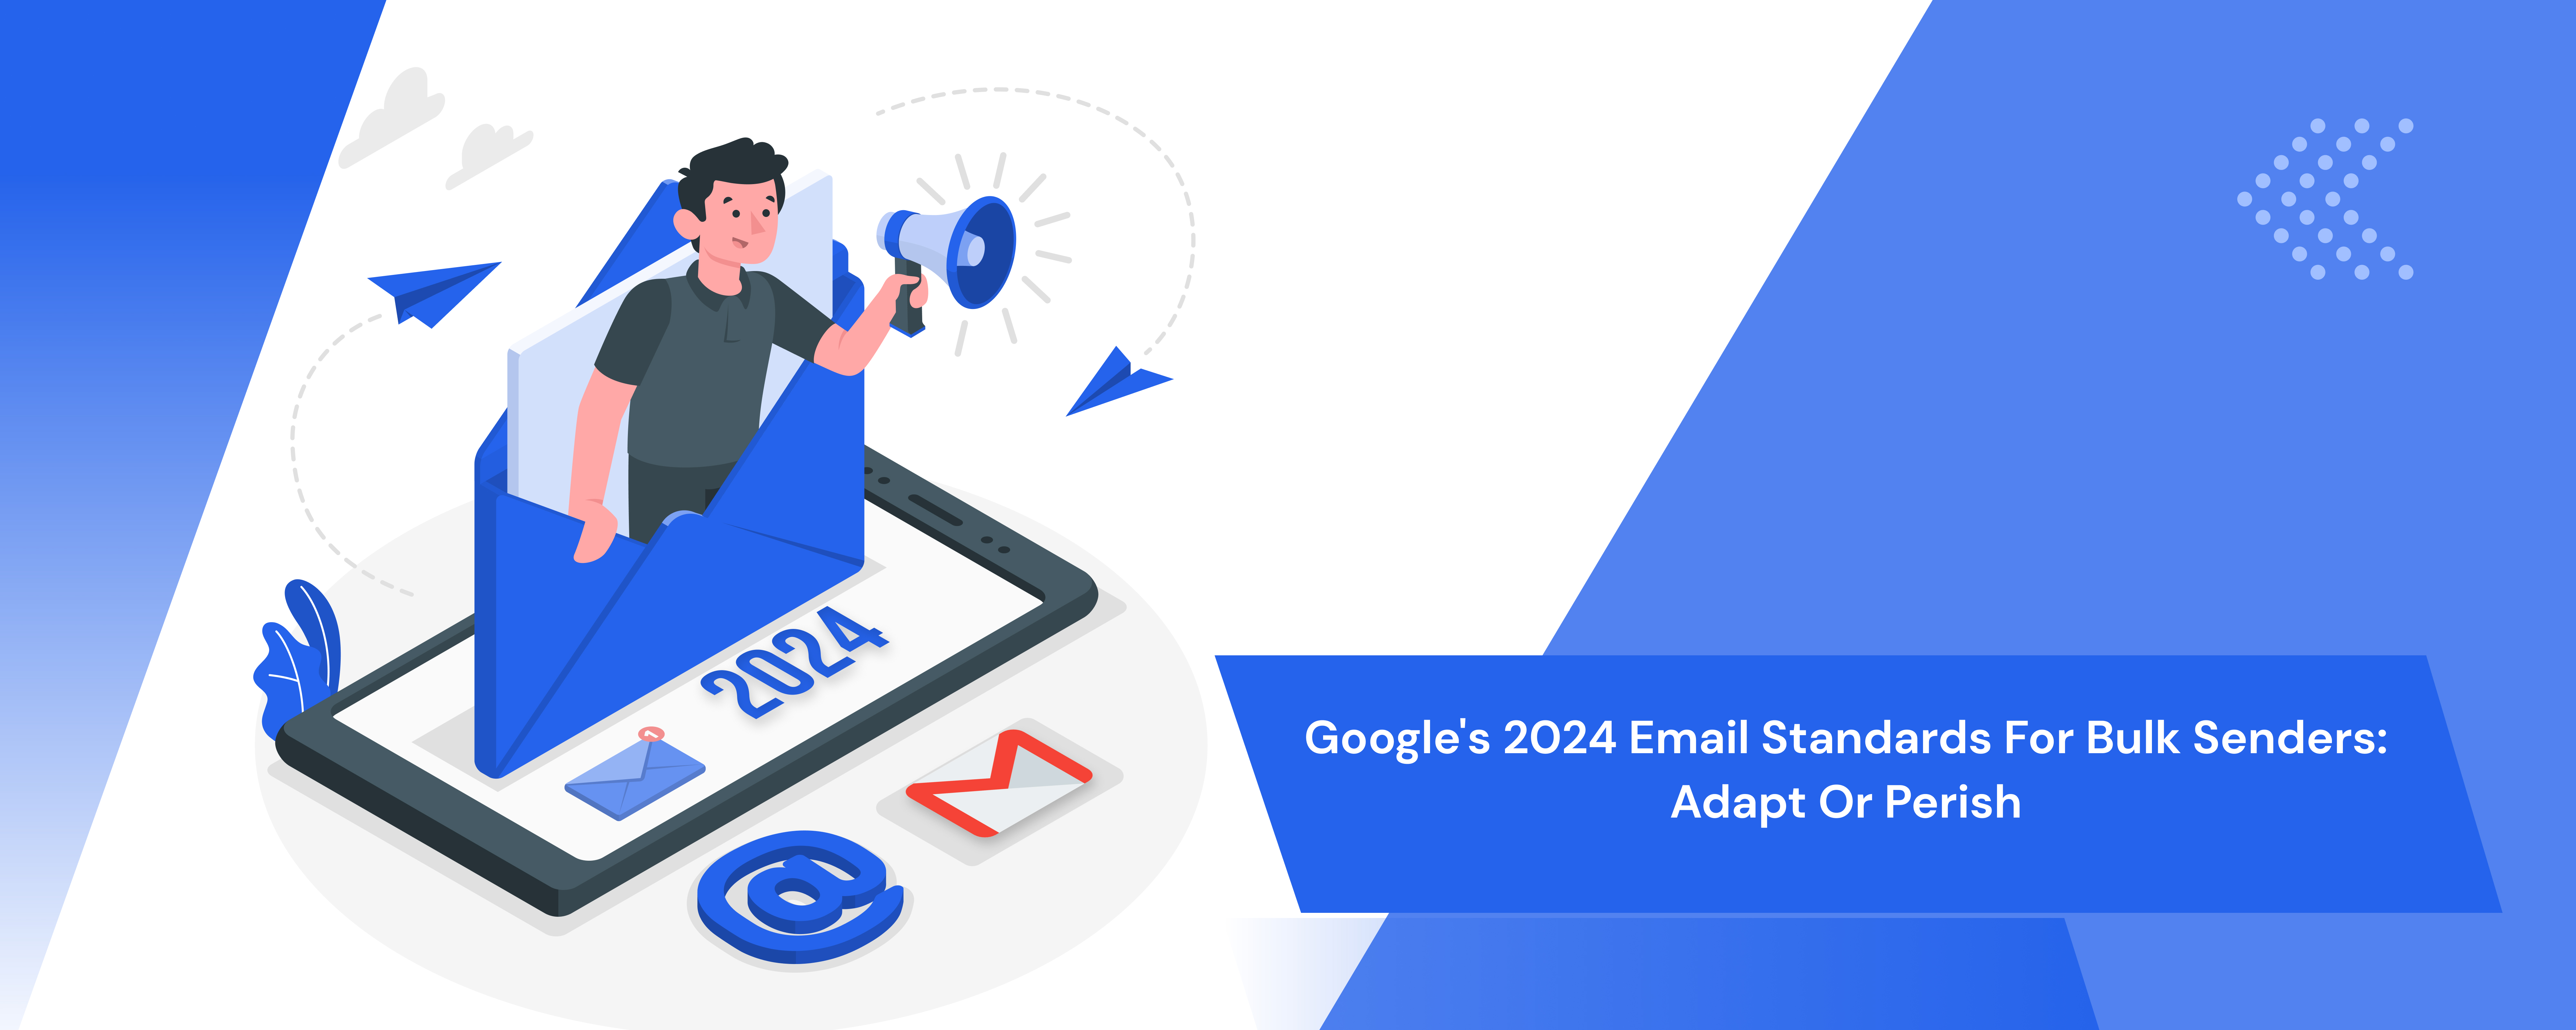 Google's 2024 Email Standards for Bulk Senders: Adapt or Perish